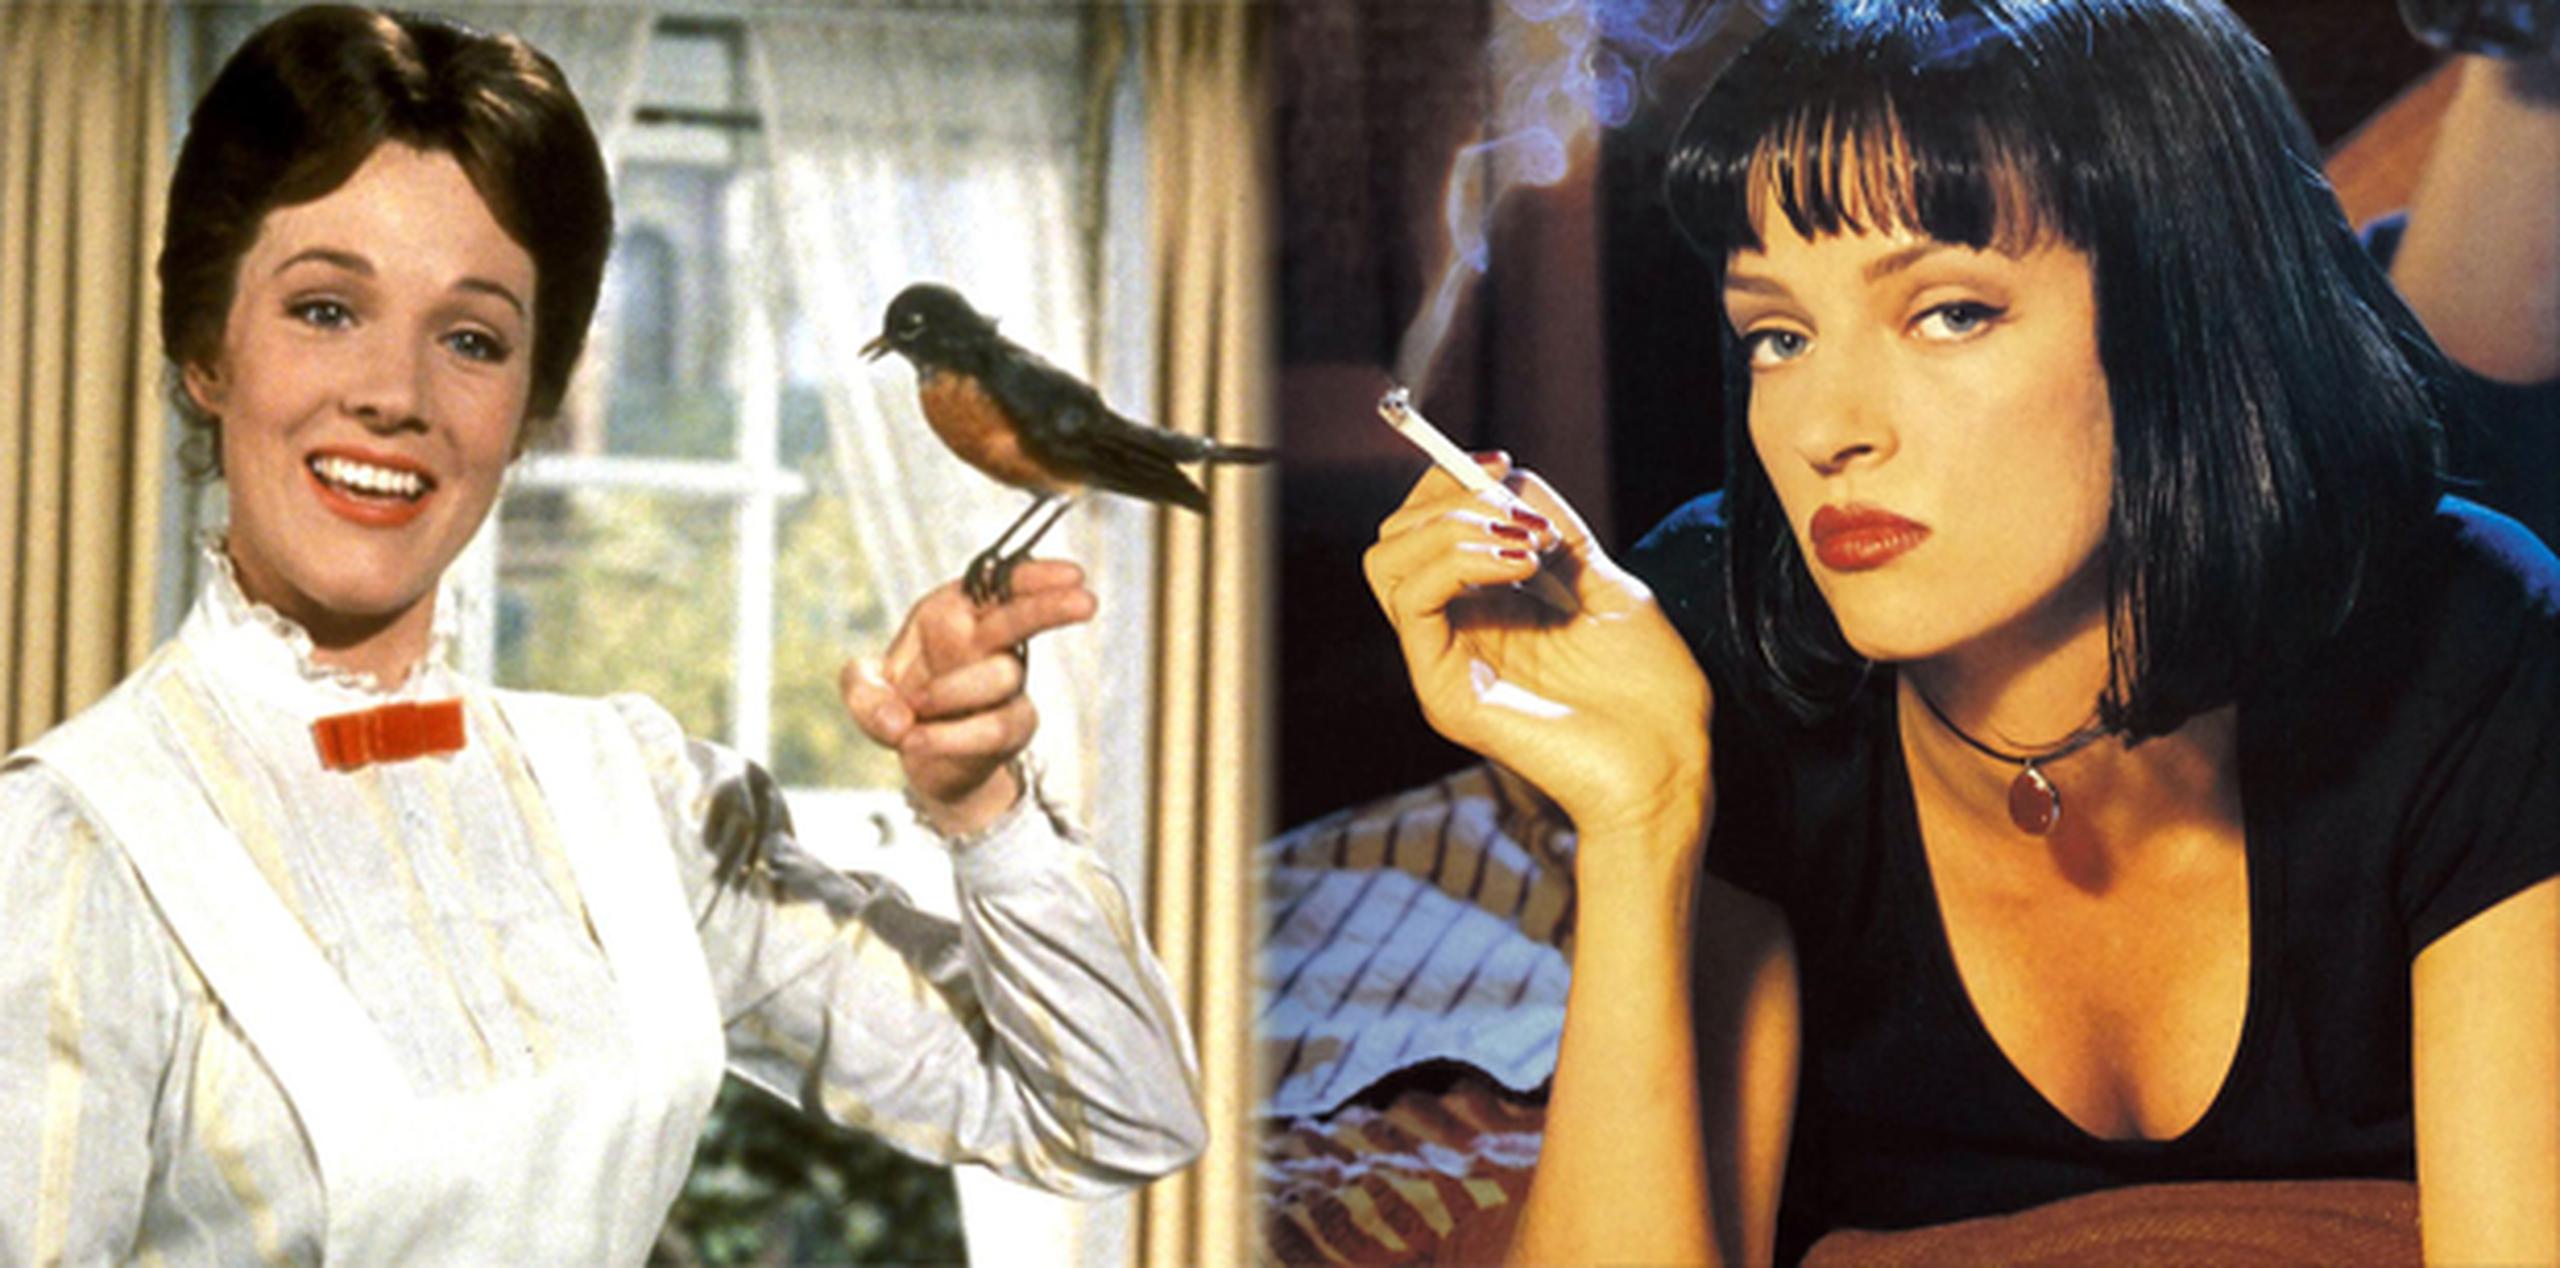 El Congreso creó el programa en 1989 para asegurar que las joyas del cine estadounidense se preserven para los años venideros. Este año entraron "Mary Poppins" y "Pulp Fiction" junto a 23 largometrajes más.